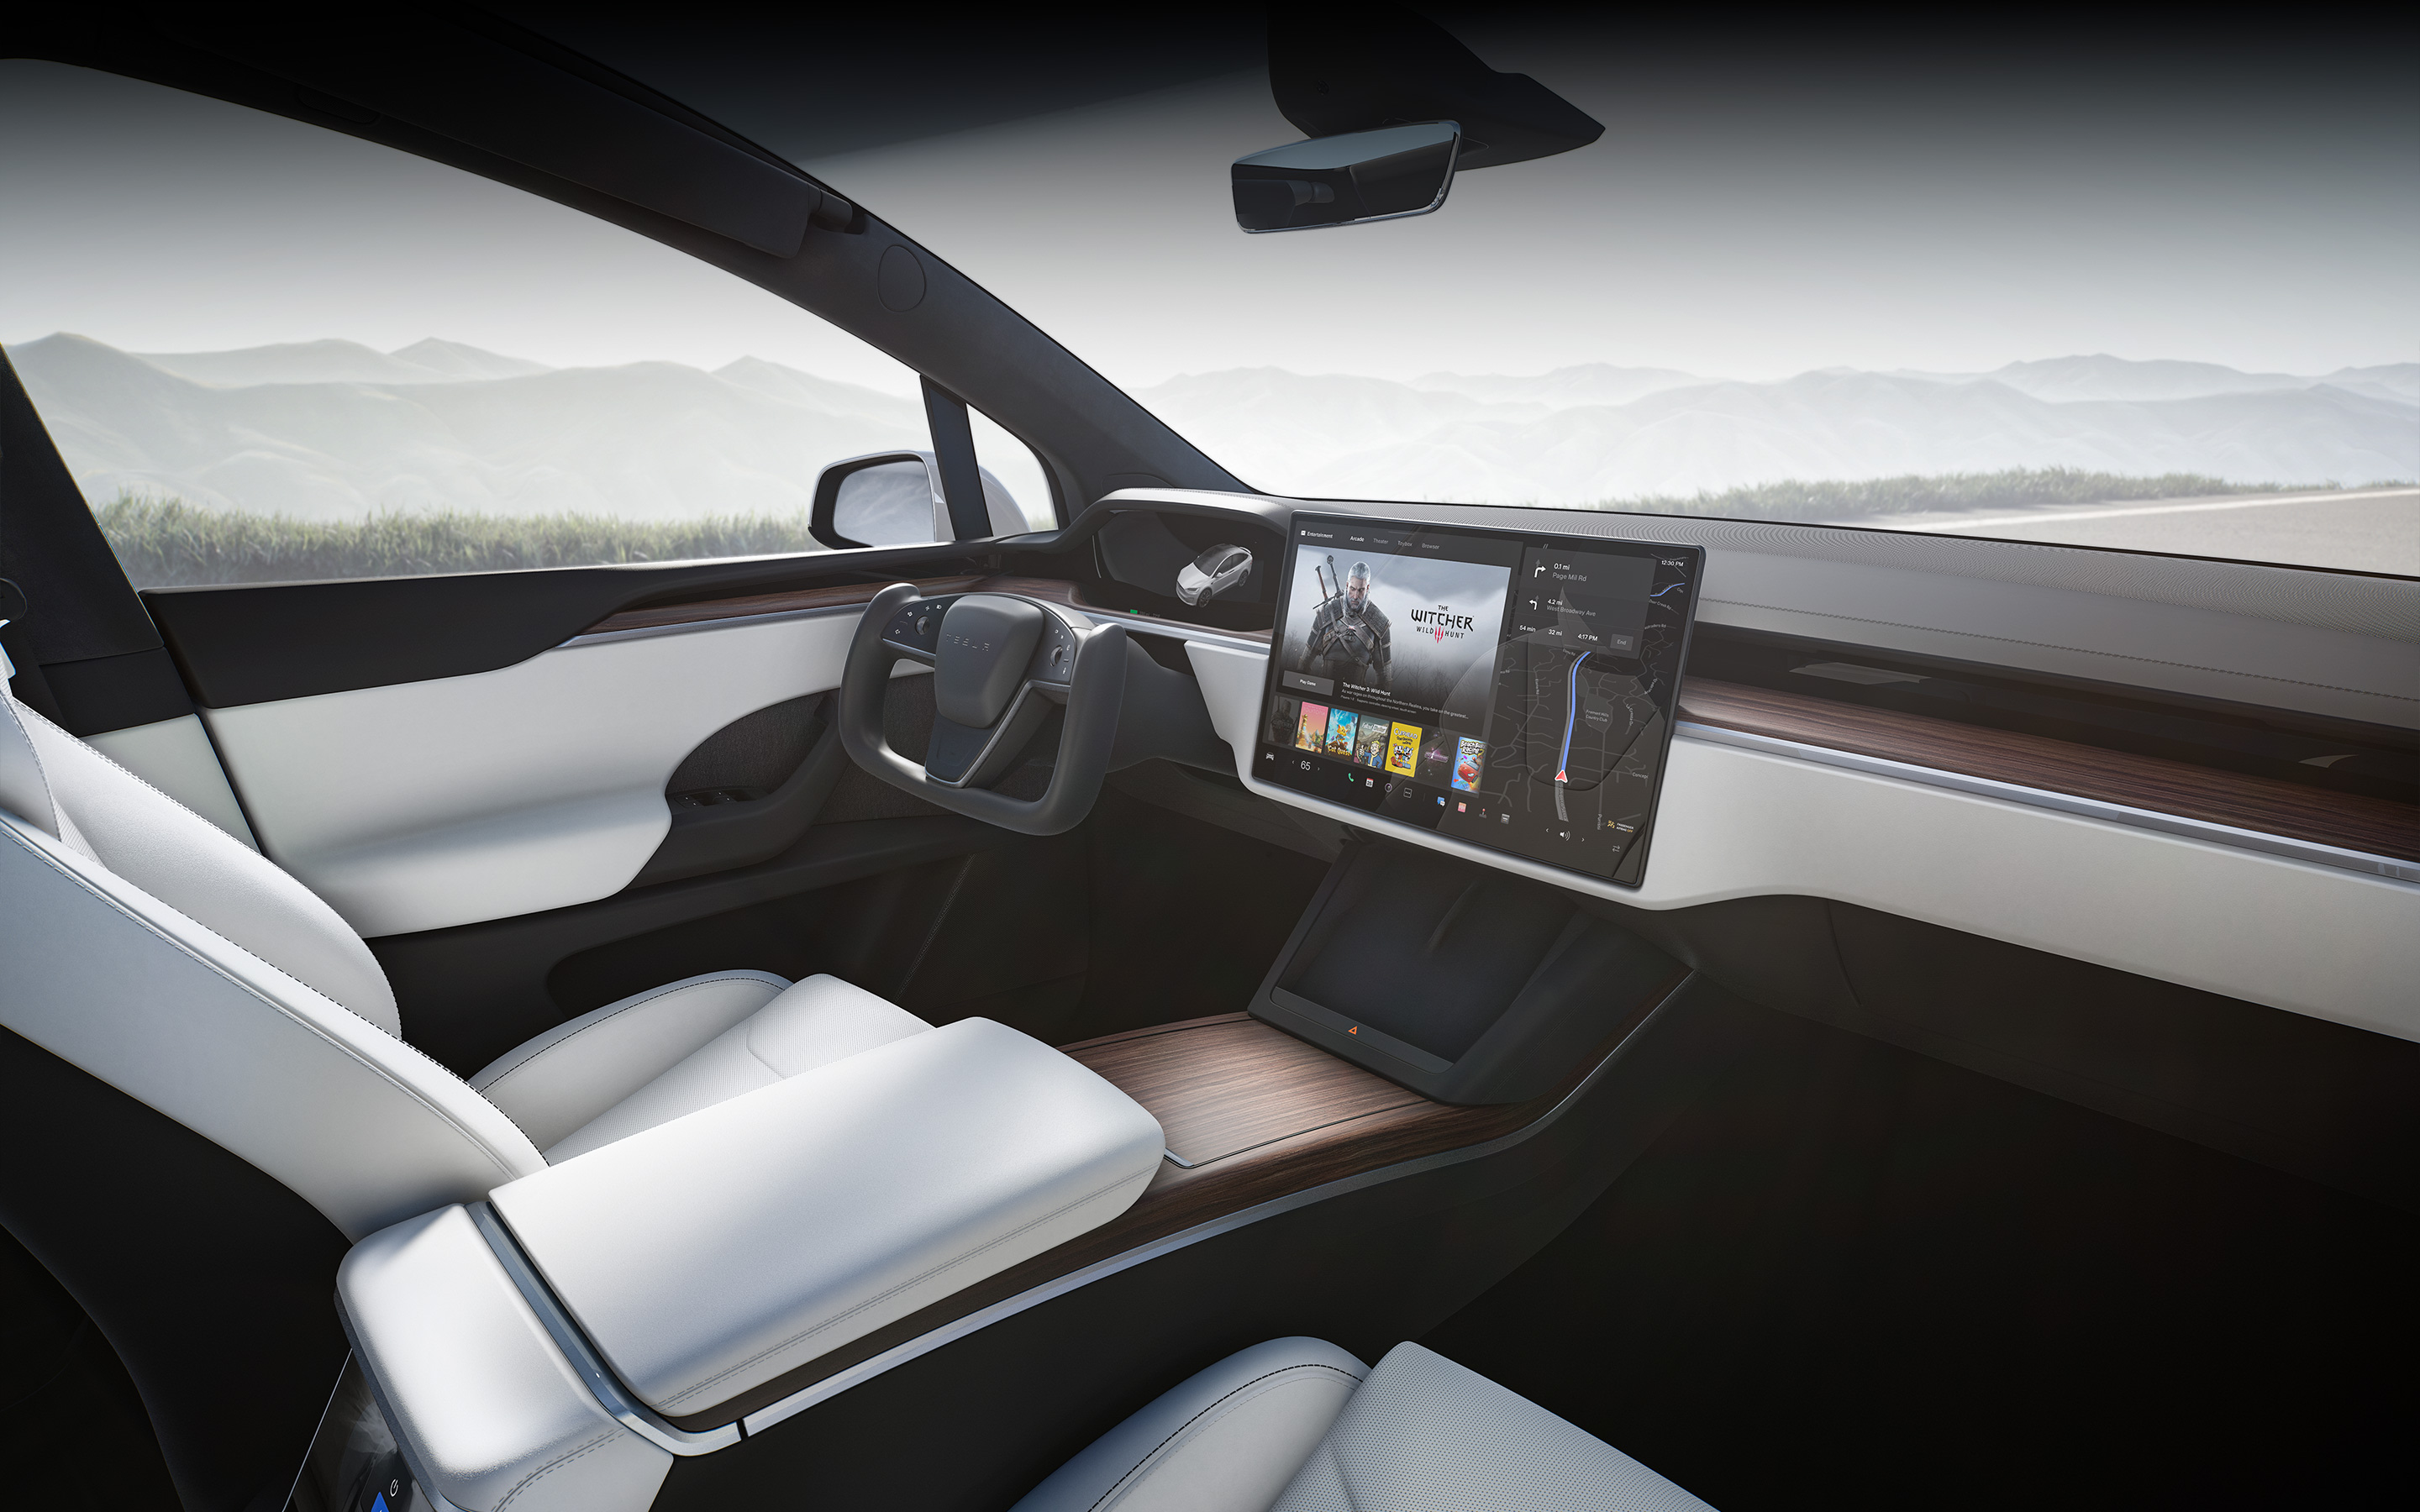 Model X met wit interieur, gezien vanaf de passagiersstoel, met focus op het infotainment-touchscreen